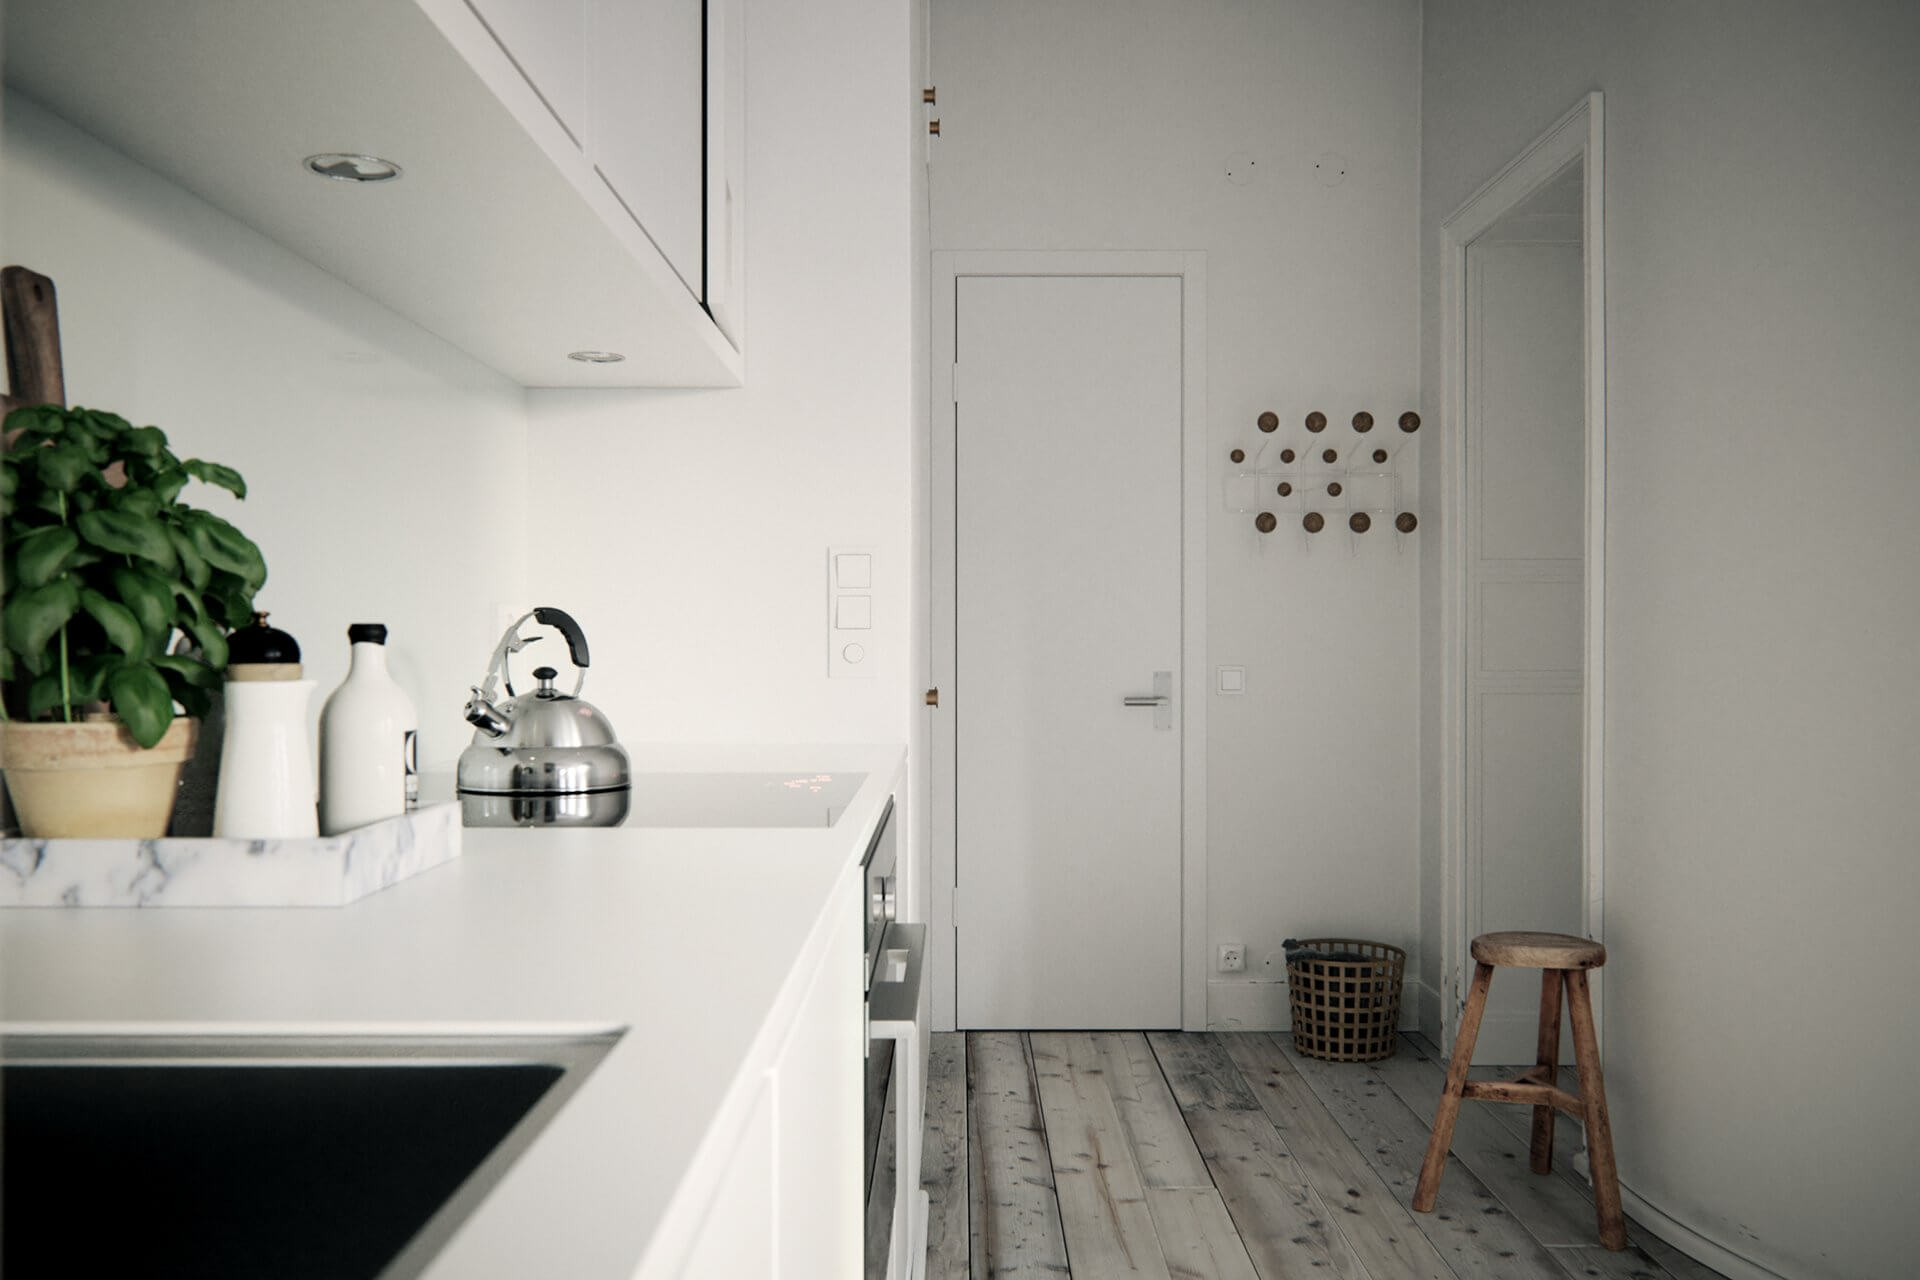 Emmas Place flat kitchen - cgi visualization